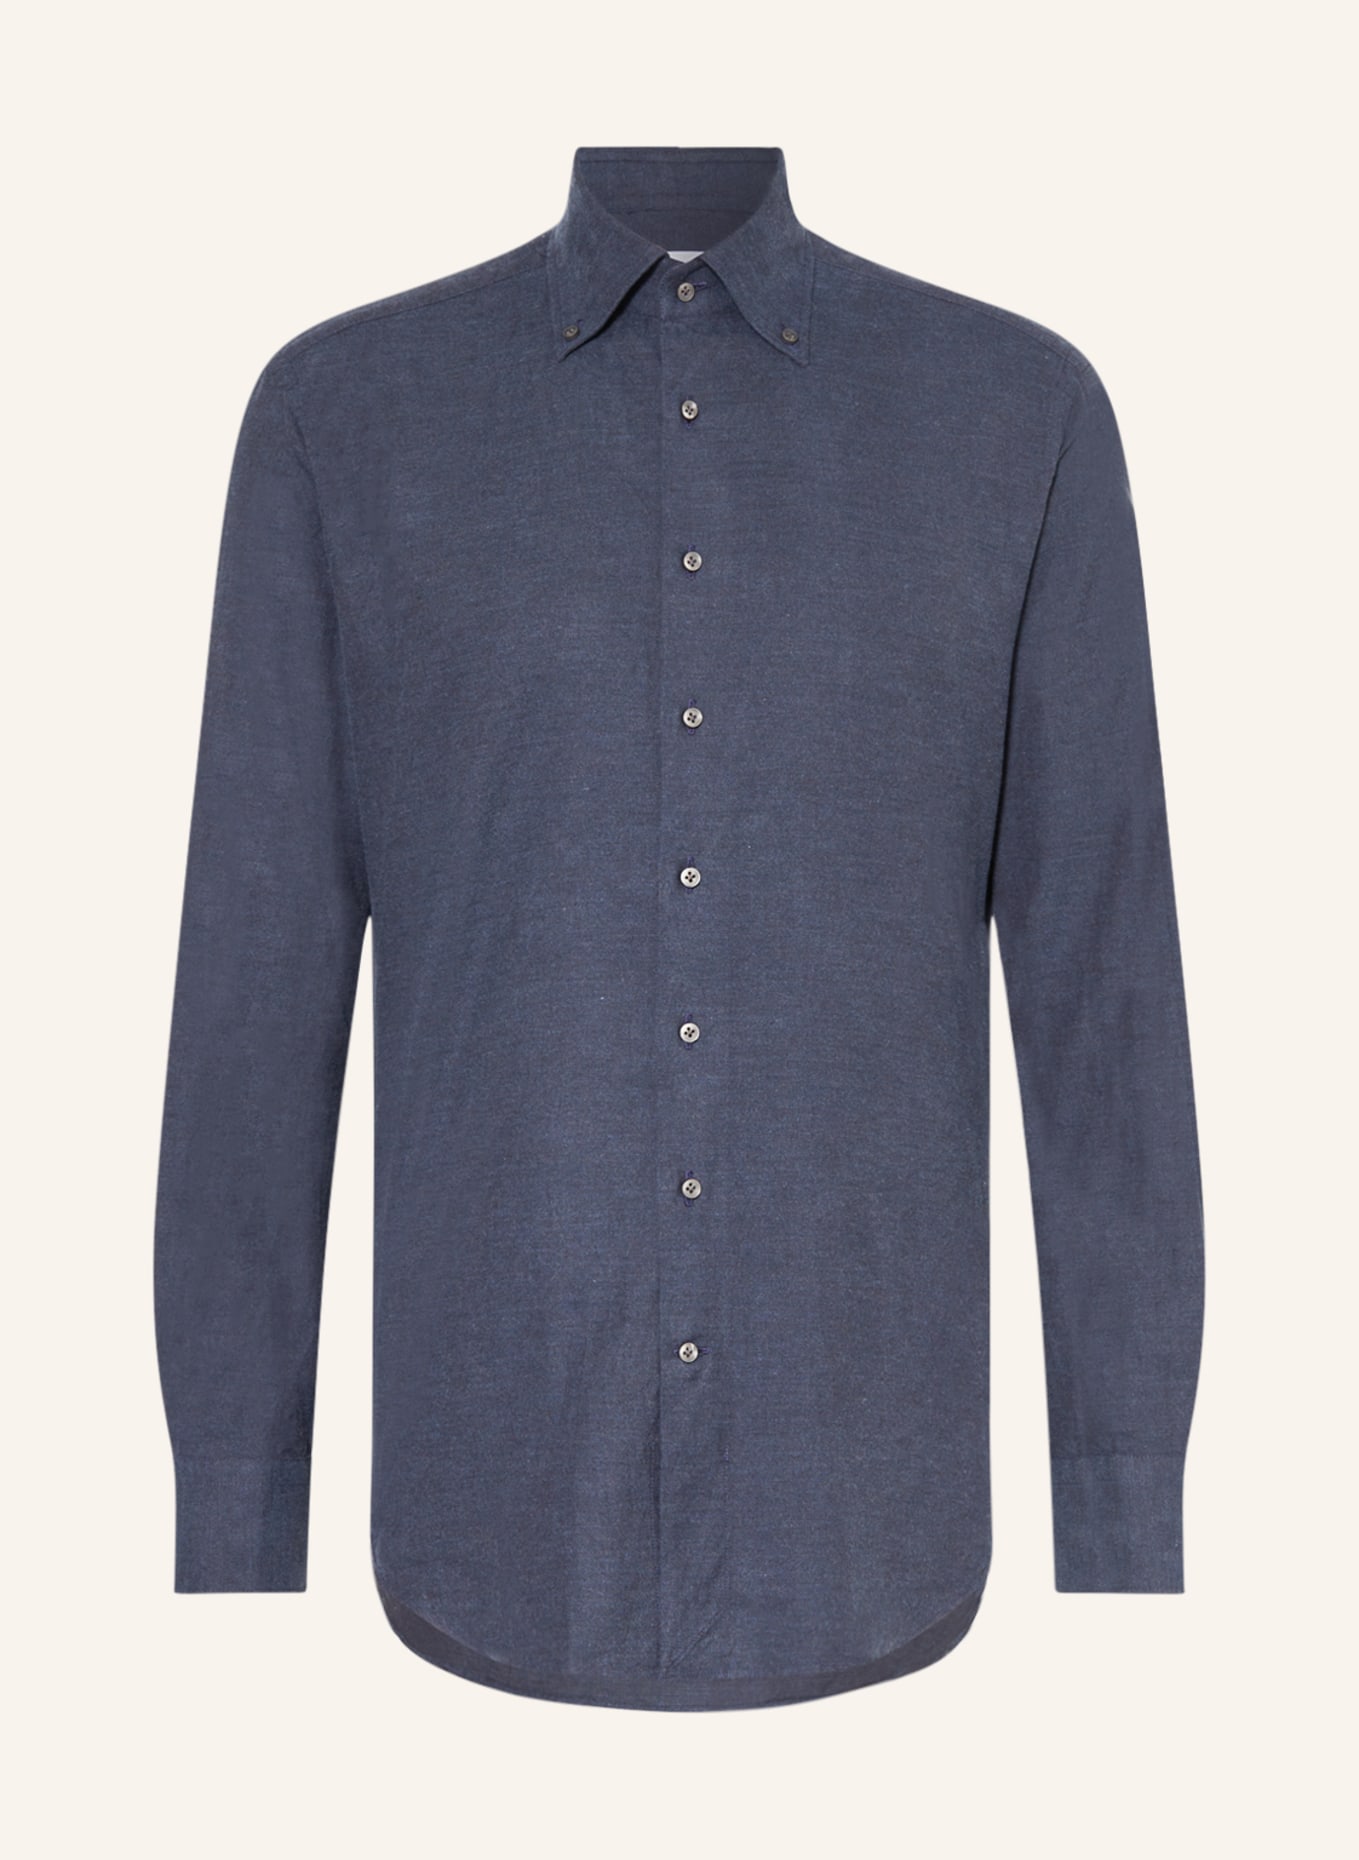 ARTIGIANO Flannel shirt regular fit, Color: BLUE GRAY (Image 1)